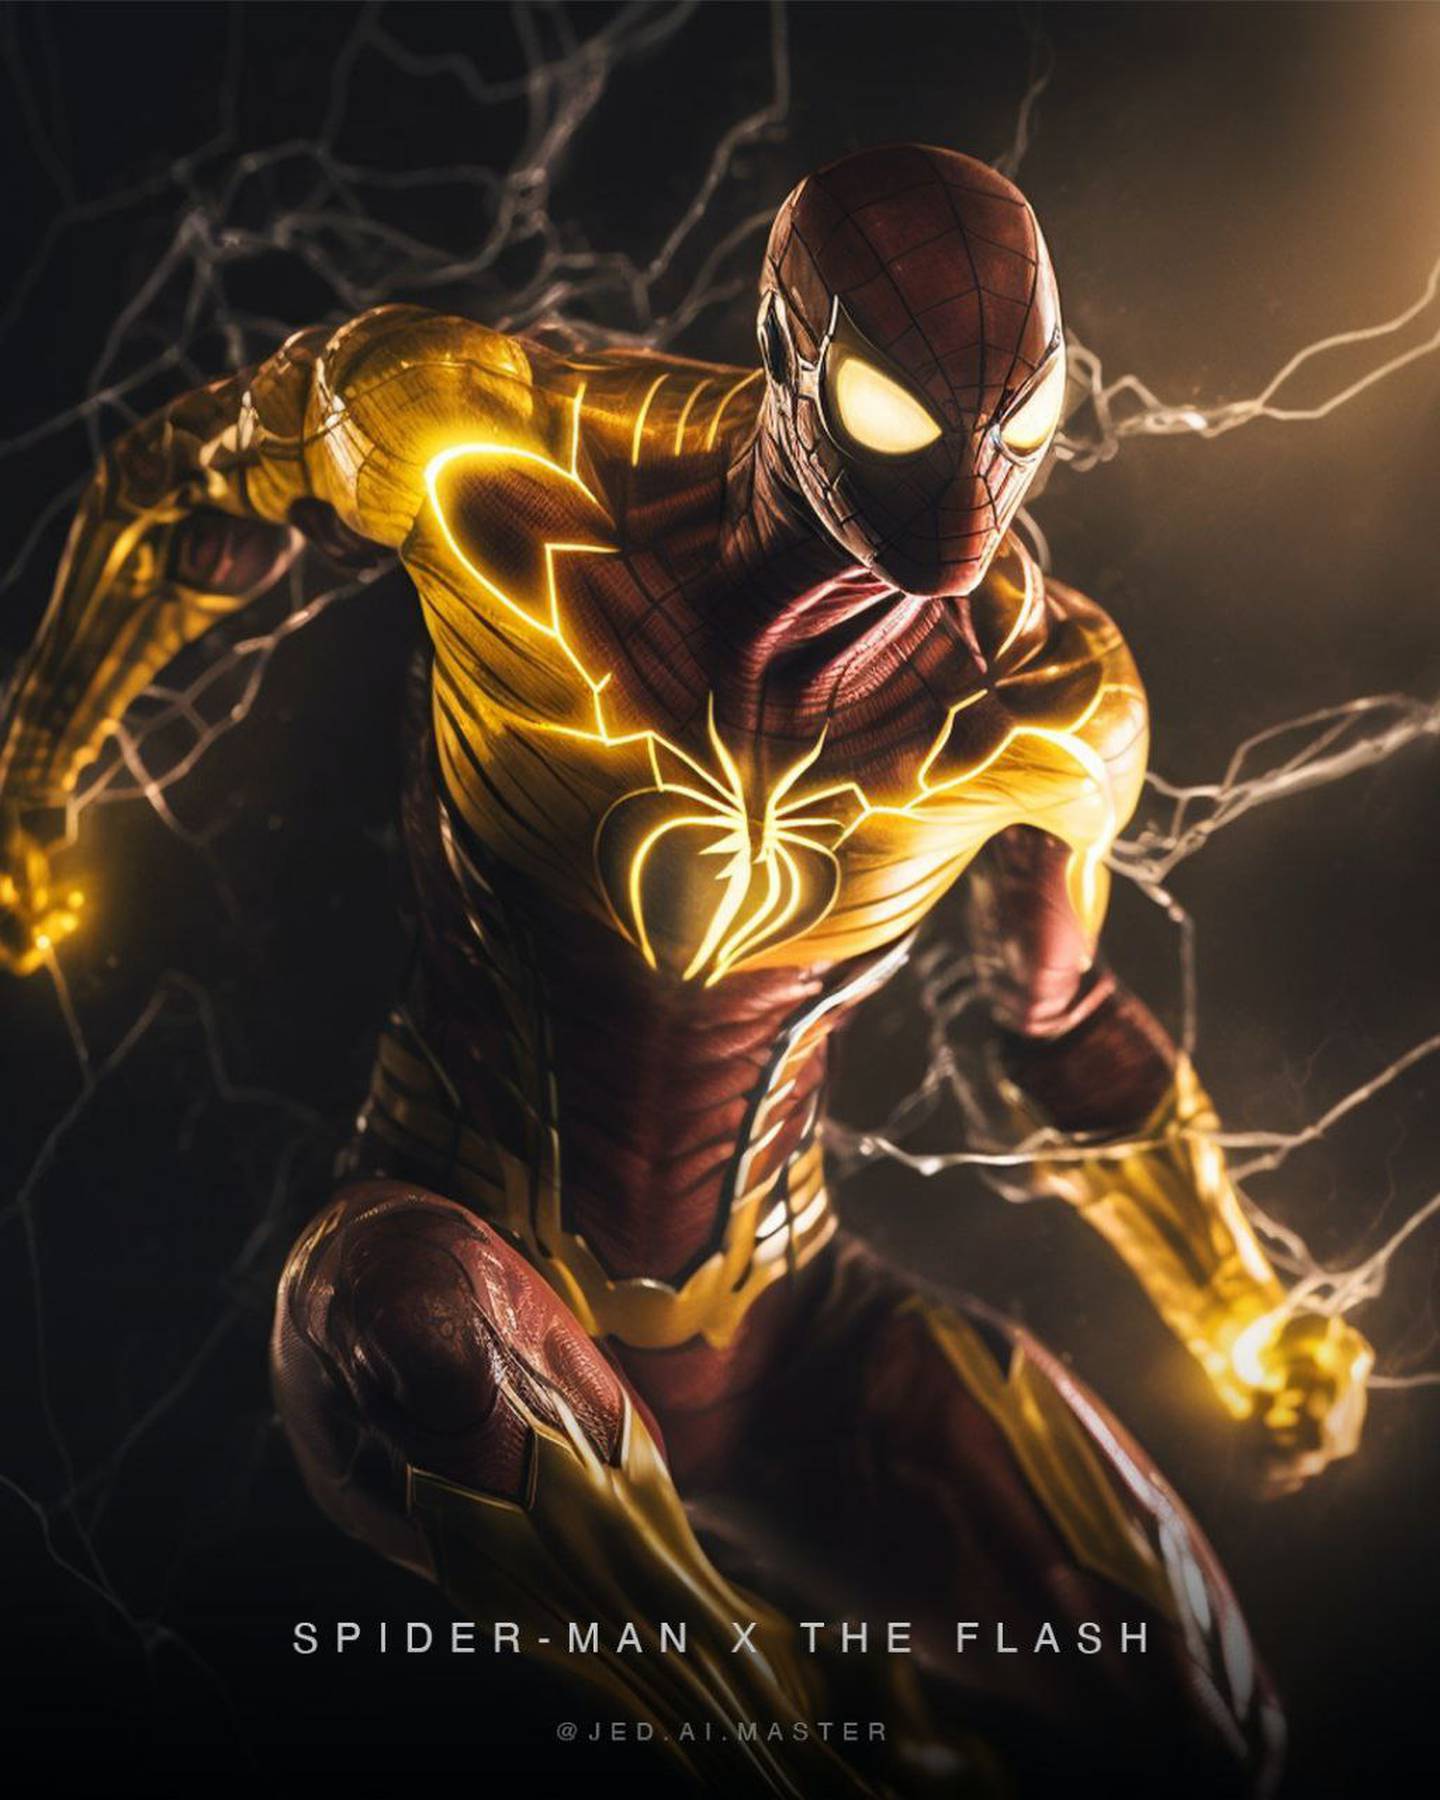 Spider-Man x The Flash